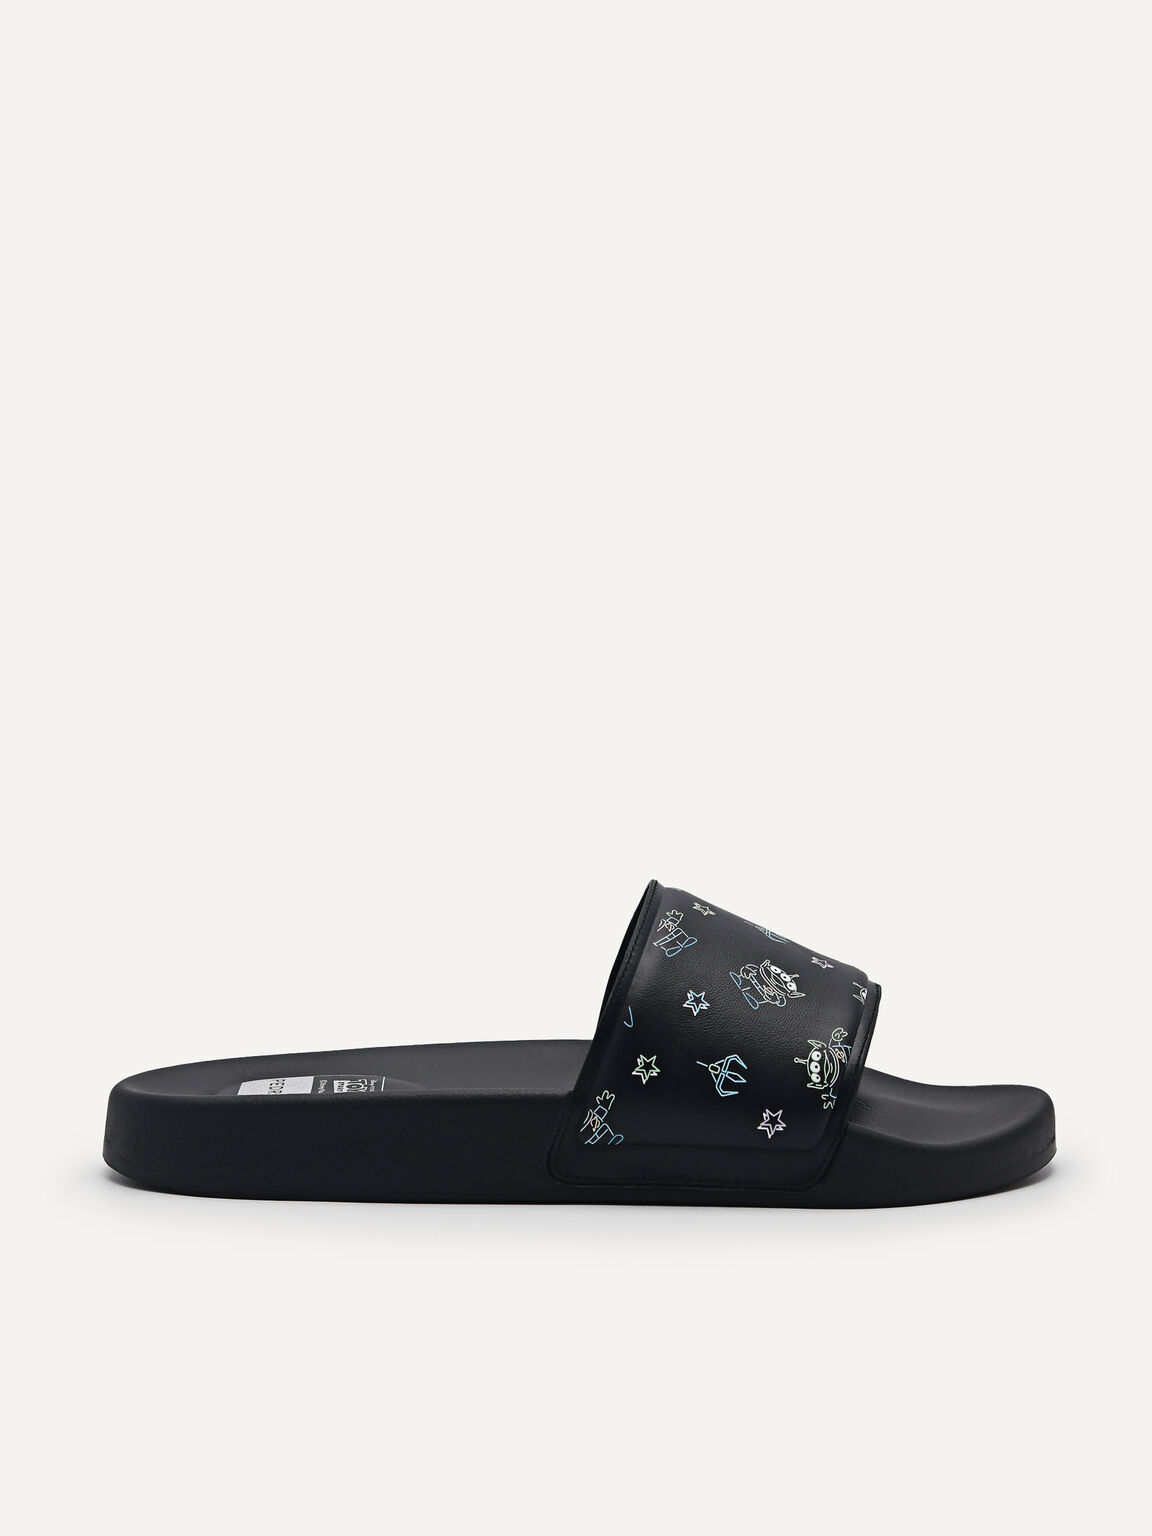 Disney Slide Sandals, Black